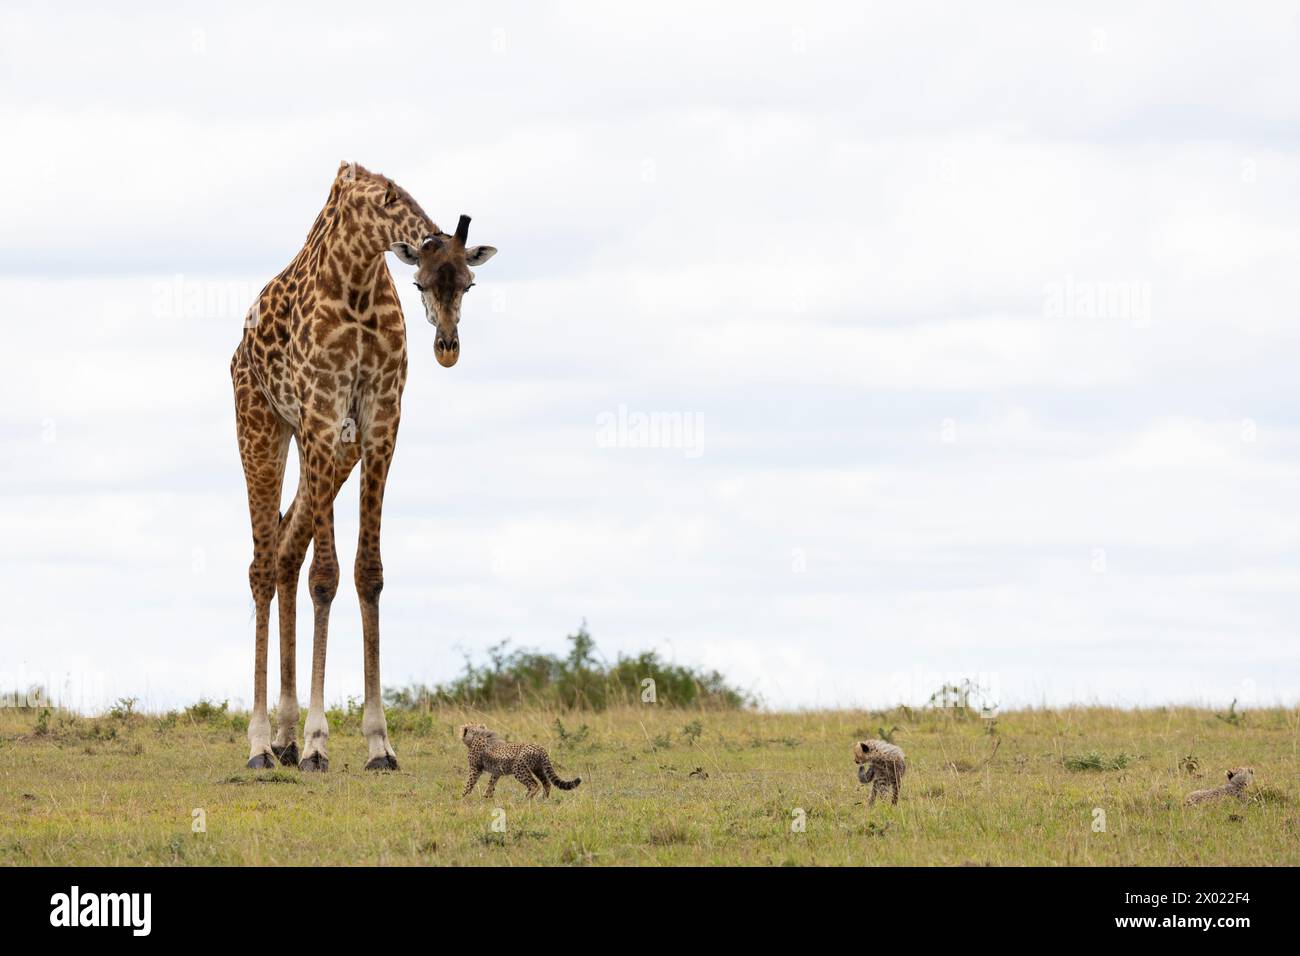 Girafe (Giraffa camelopardalis) regardant le guépard, Masai Mara, Kenya Banque D'Images